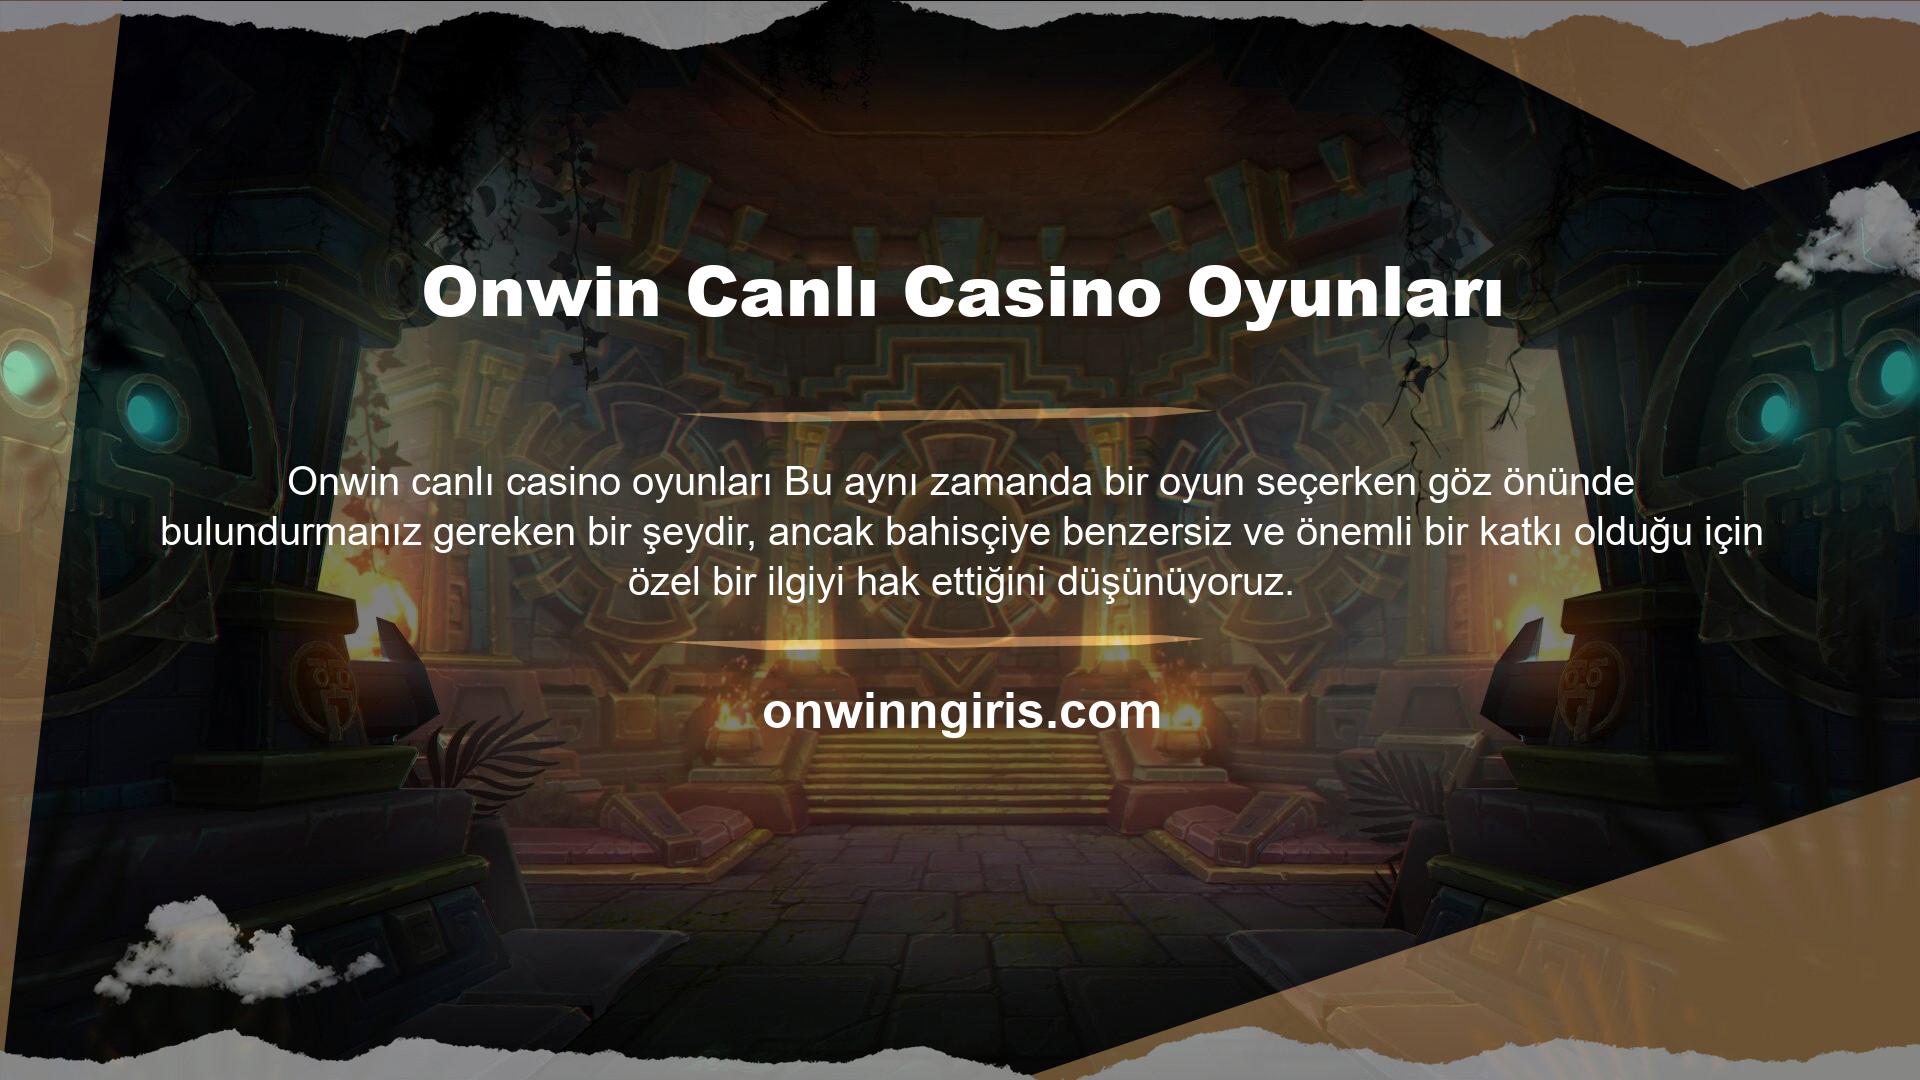 Onwin mobil oyunlarından keyif alabilme yeteneği, çoğu kişinin çevrimiçi deneyiminin önemli bir parçasıdır